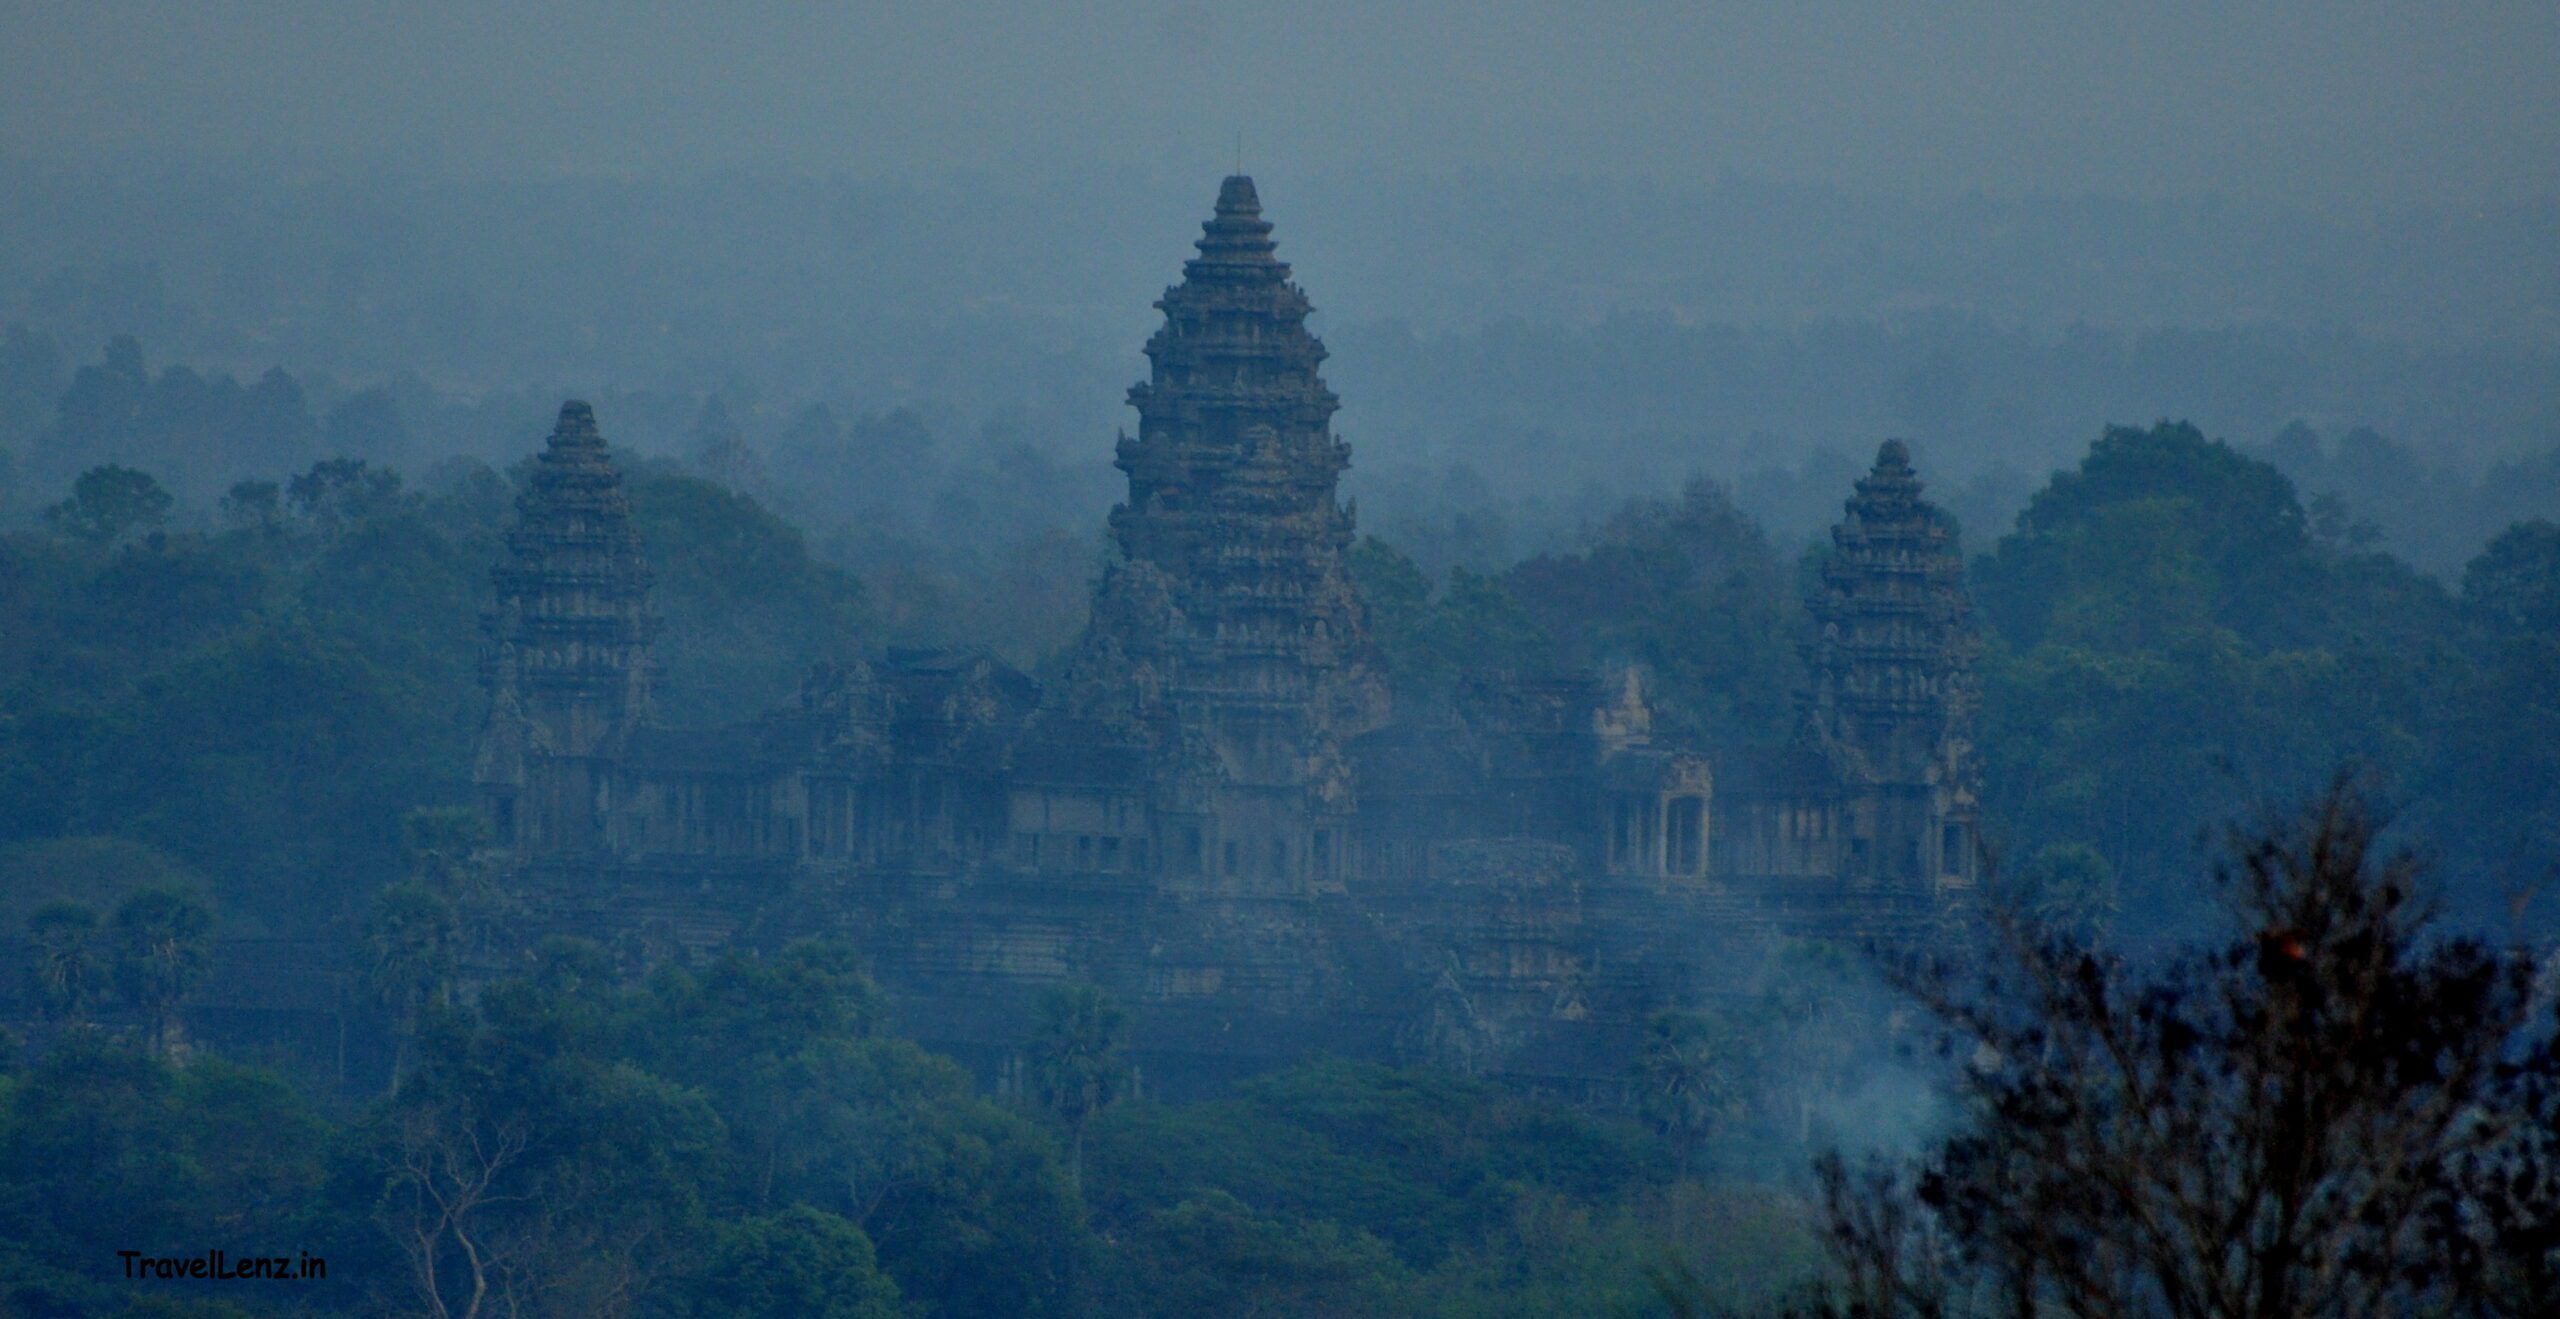 Angkor Wat complex as seen from Bakheng Hill